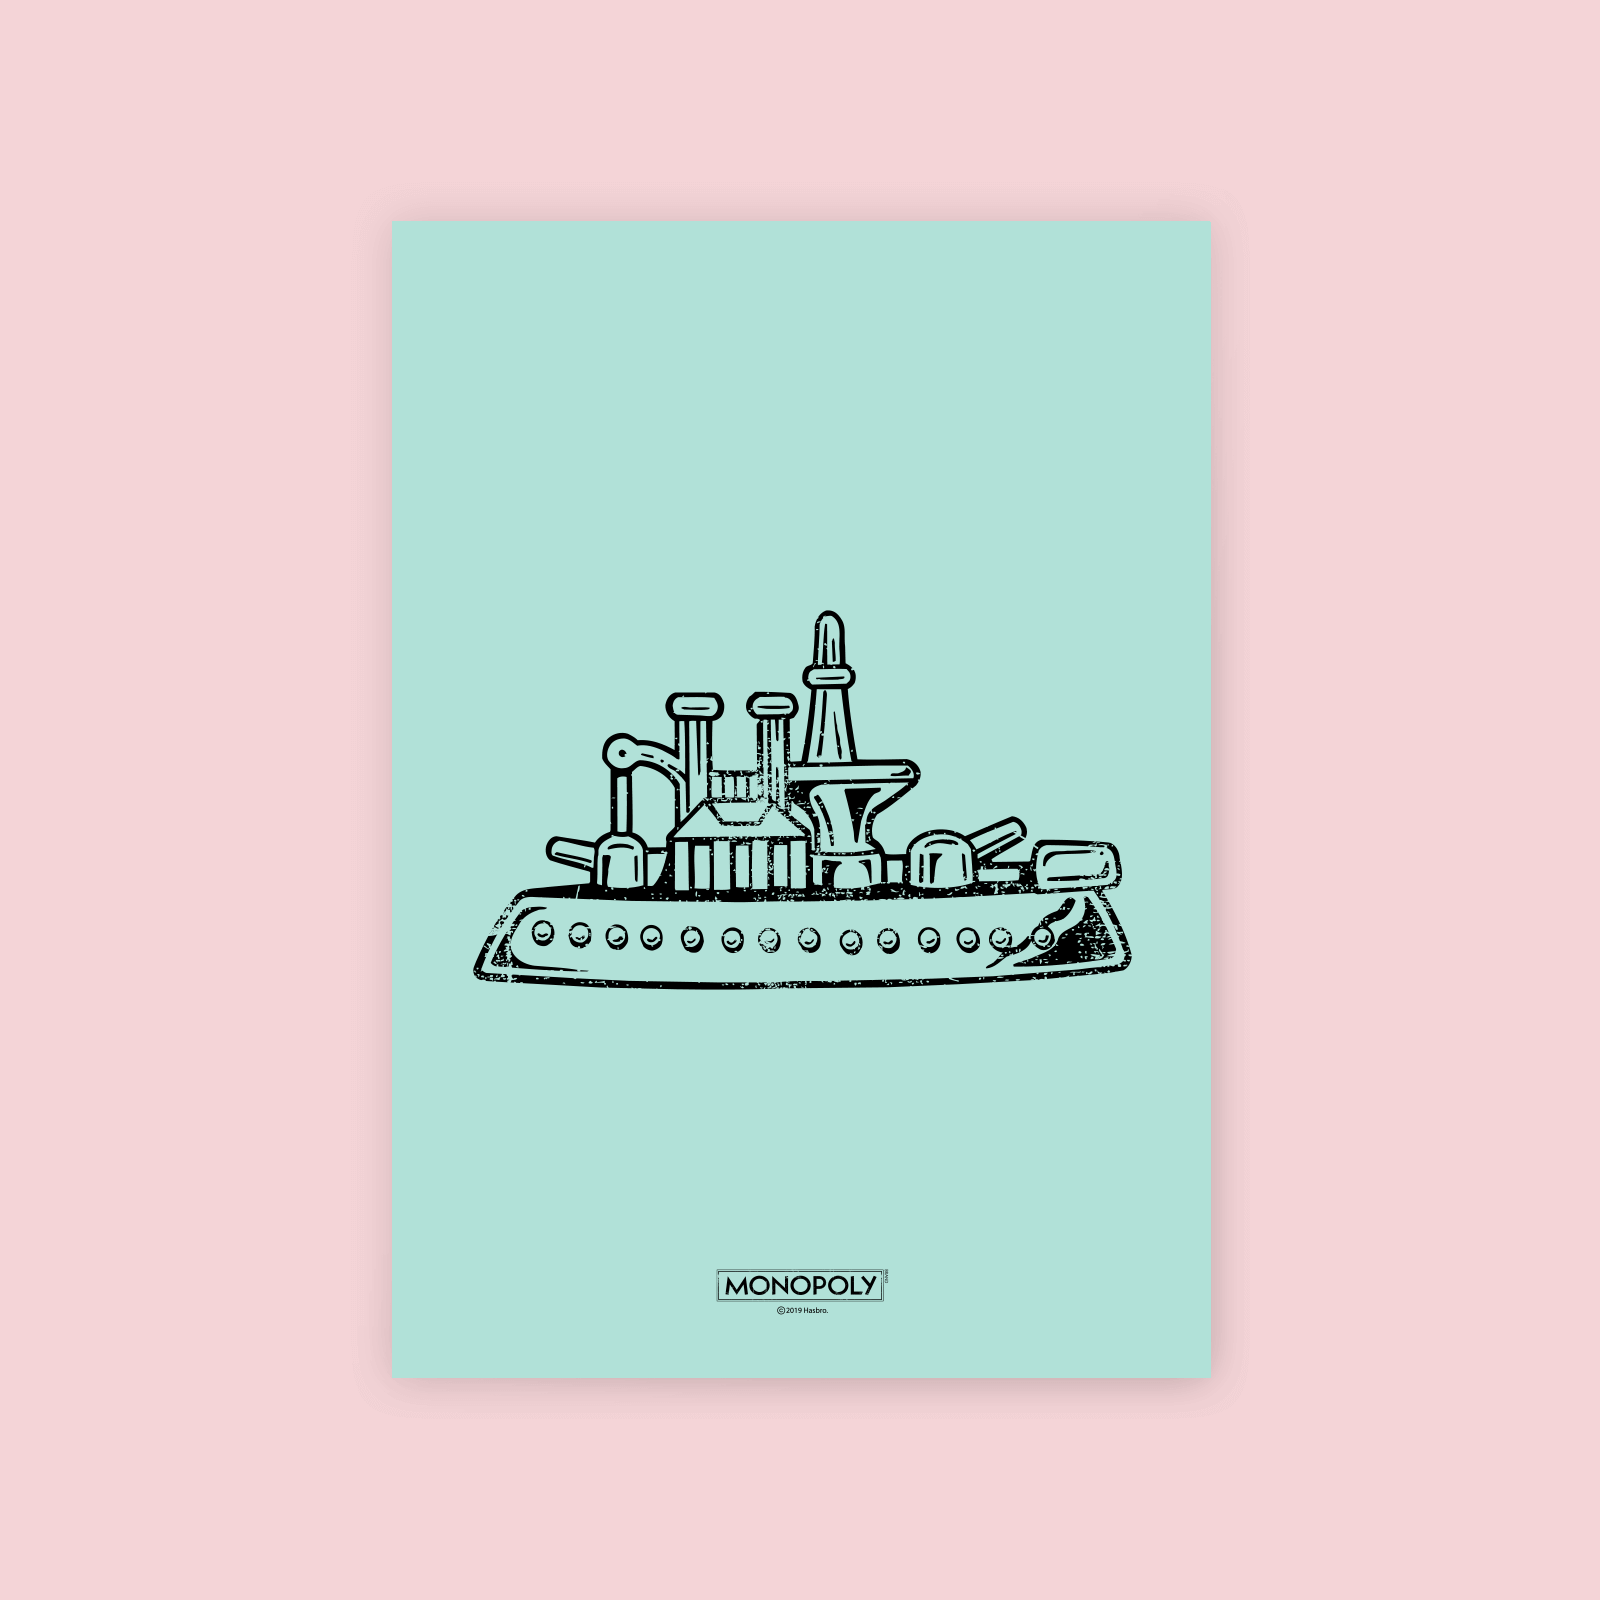 Monopoly Ship Letterpress Art Print - A4